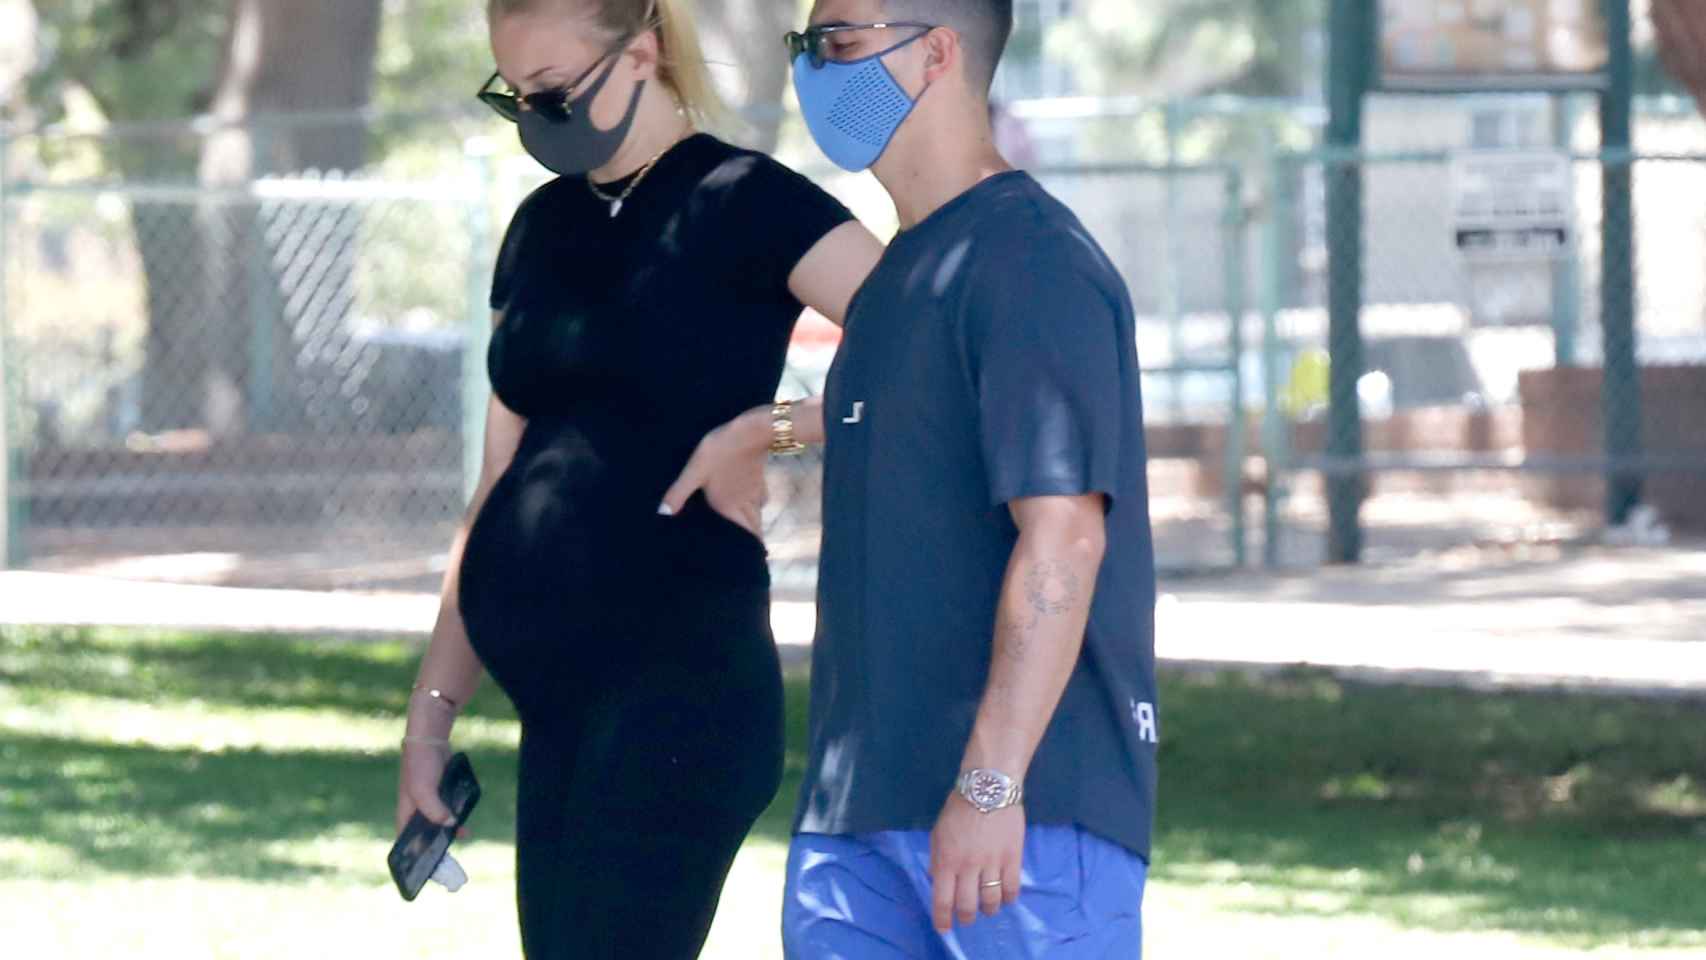 La pareja se ha dejado ver paseando por las calles de Los Ángeles durante el embarazo de Truner.